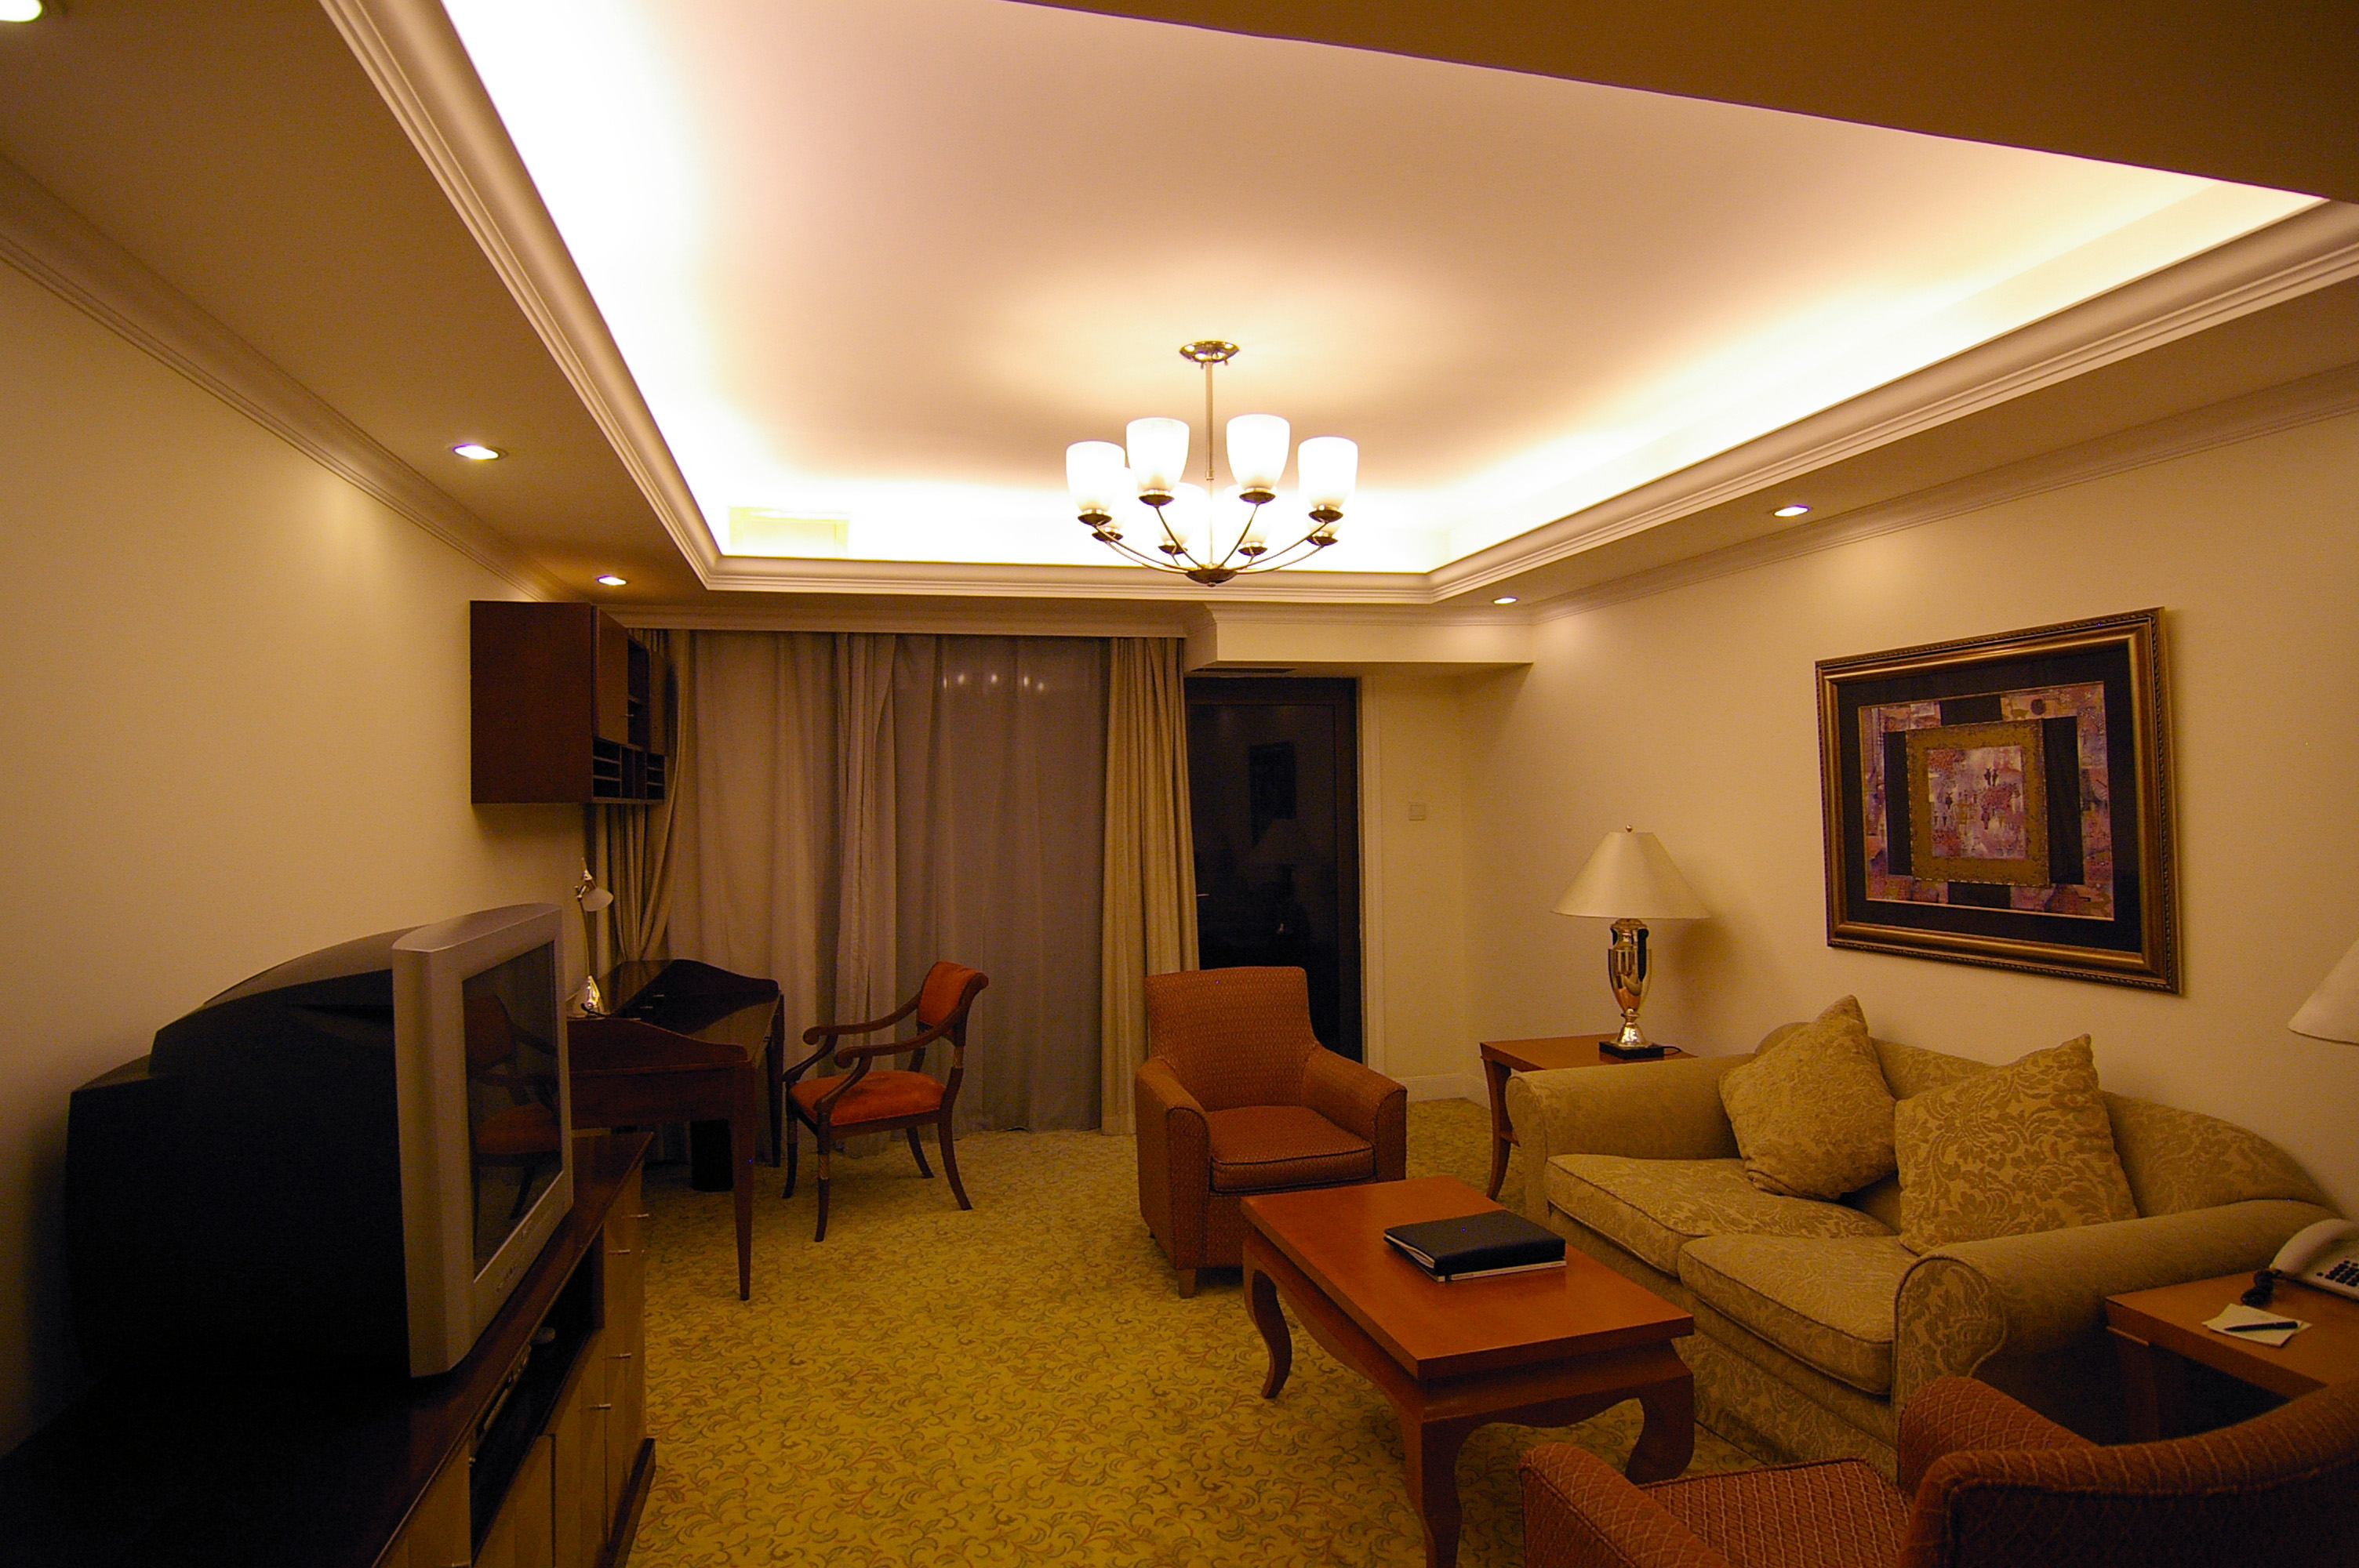 lights for apt living room